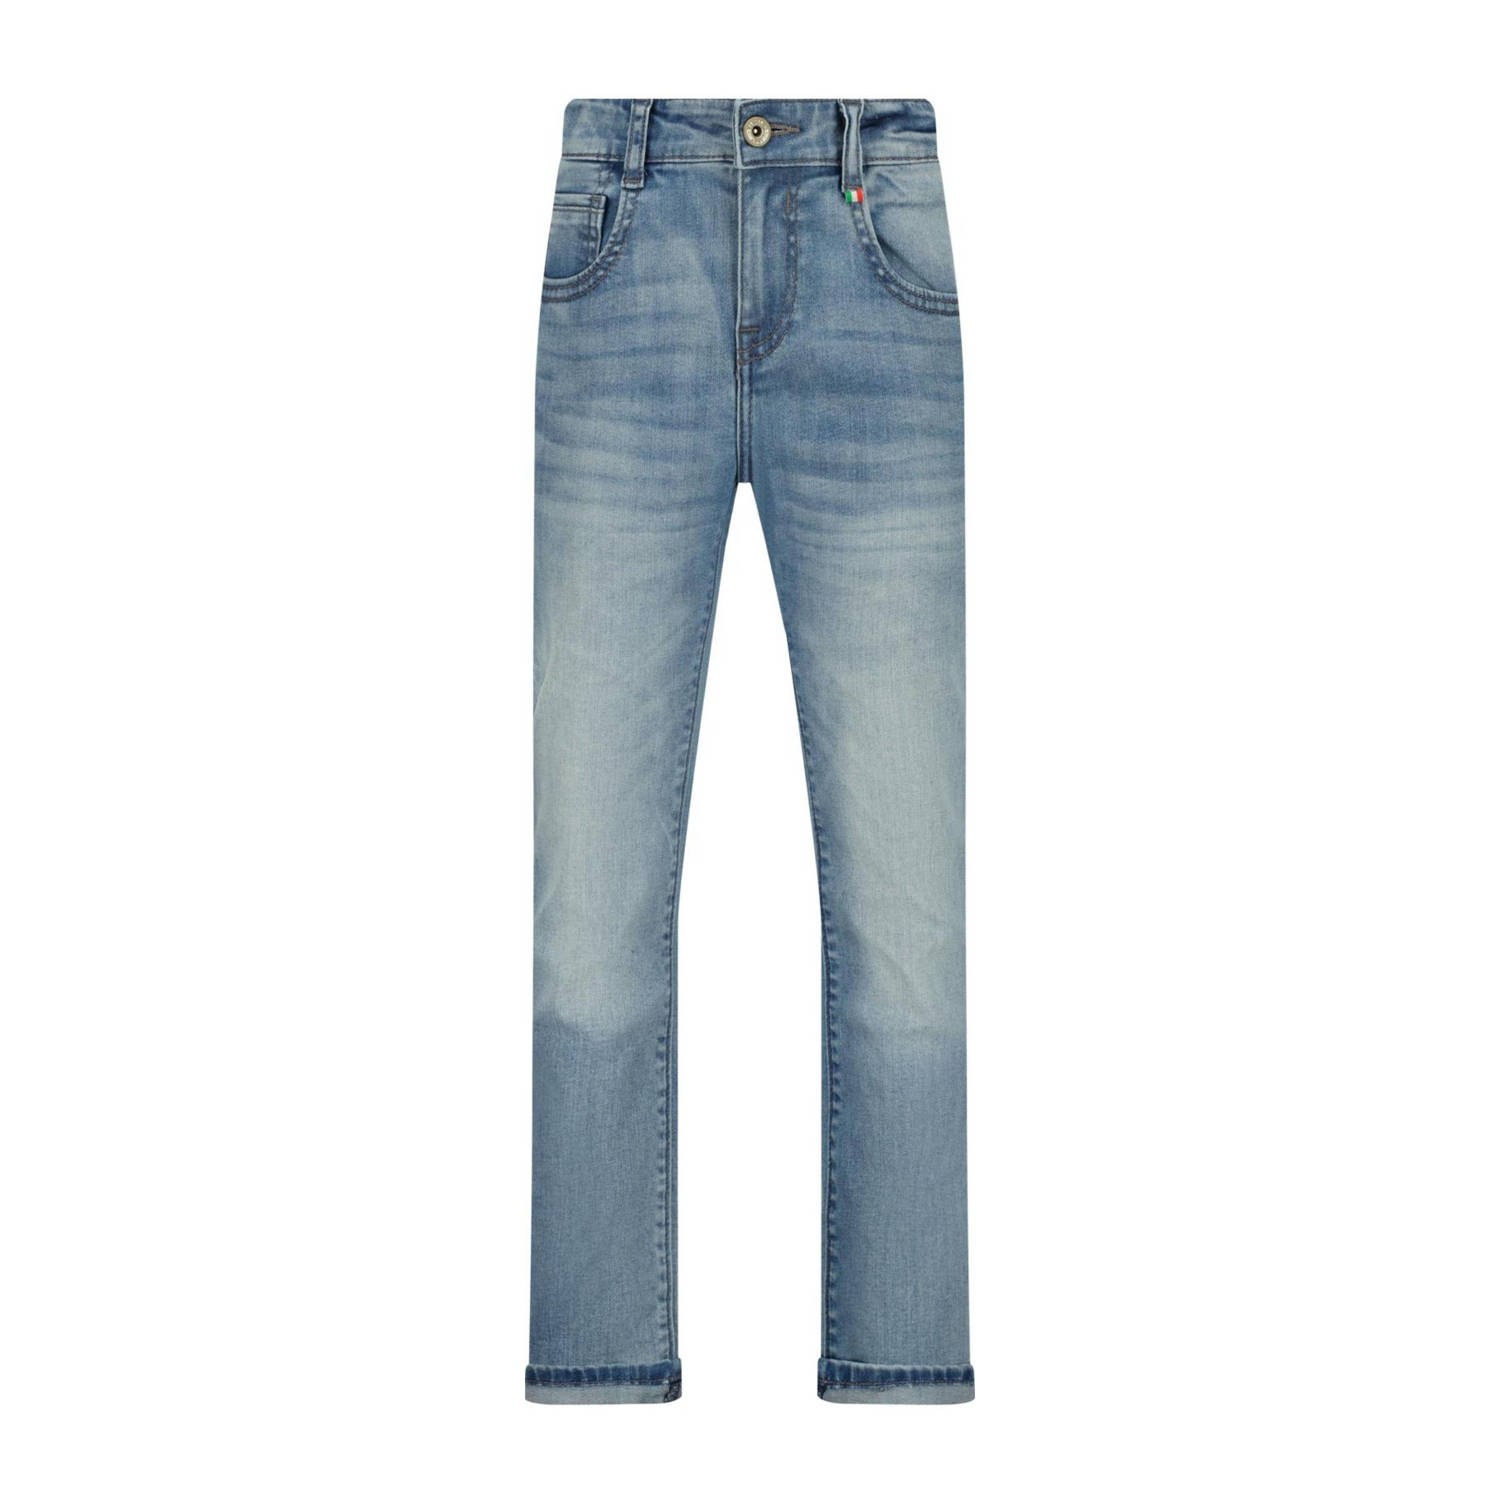 VINGINO regular fit jeans Baggio light blue denim Blauw Jongens Katoen 128